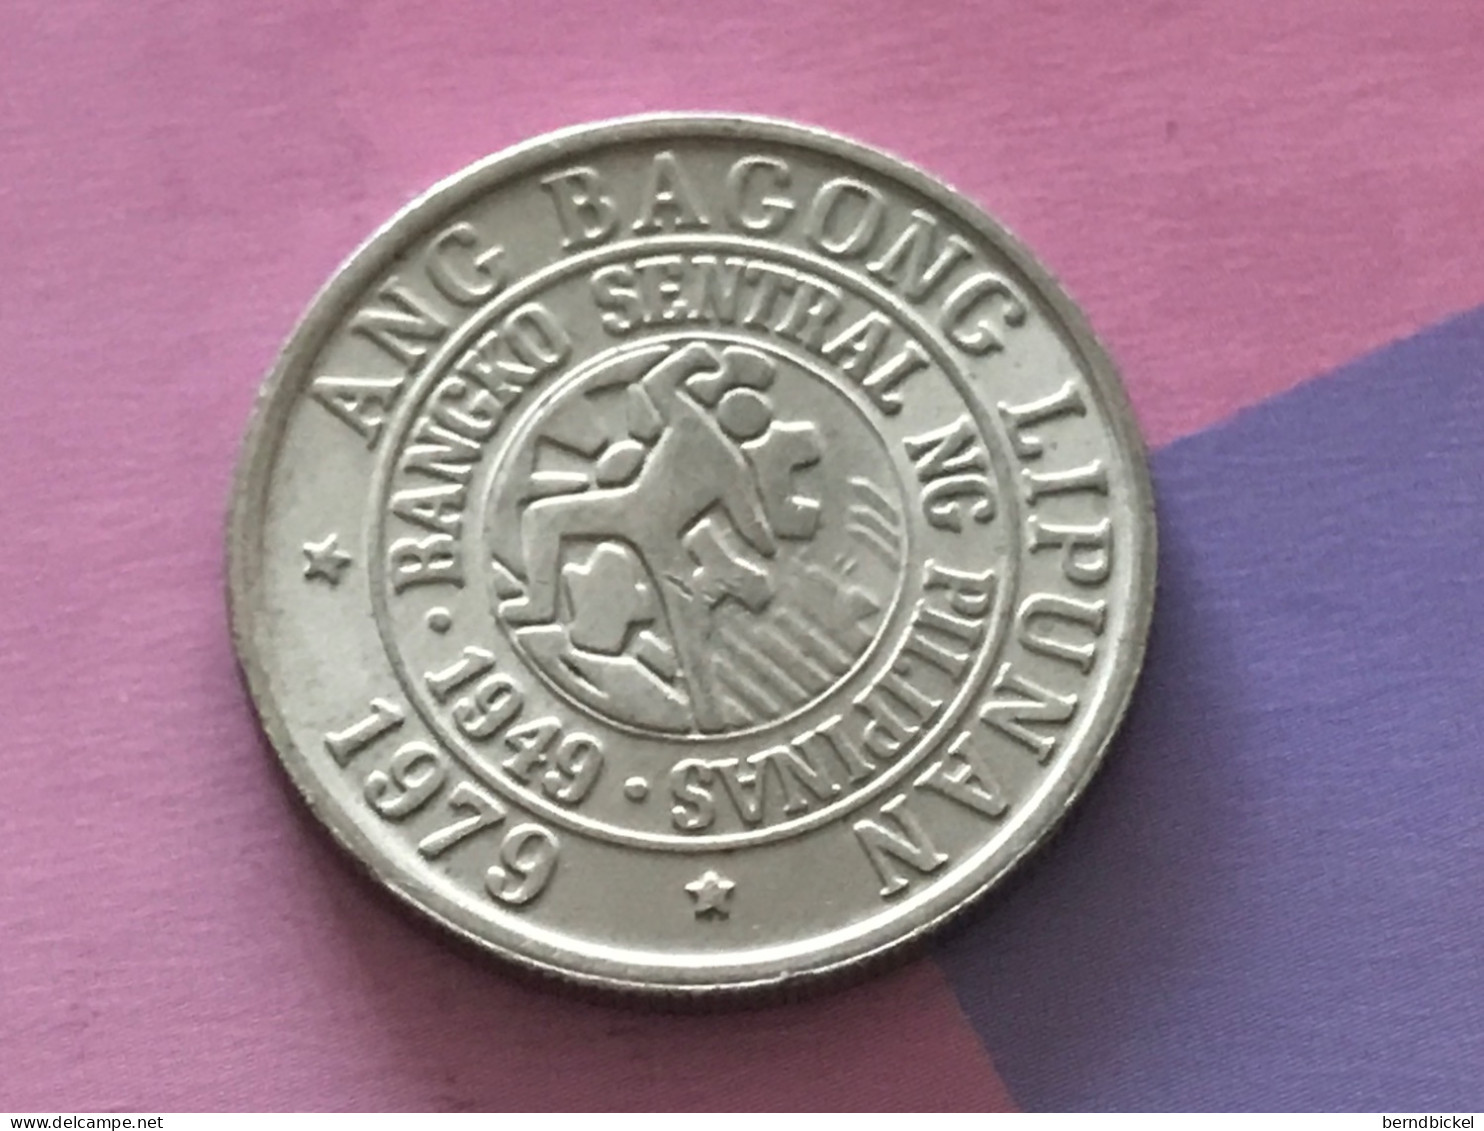 Münze Münzen Umlaufmünze Philippinen 25 Centavos 1979 - Philippinen